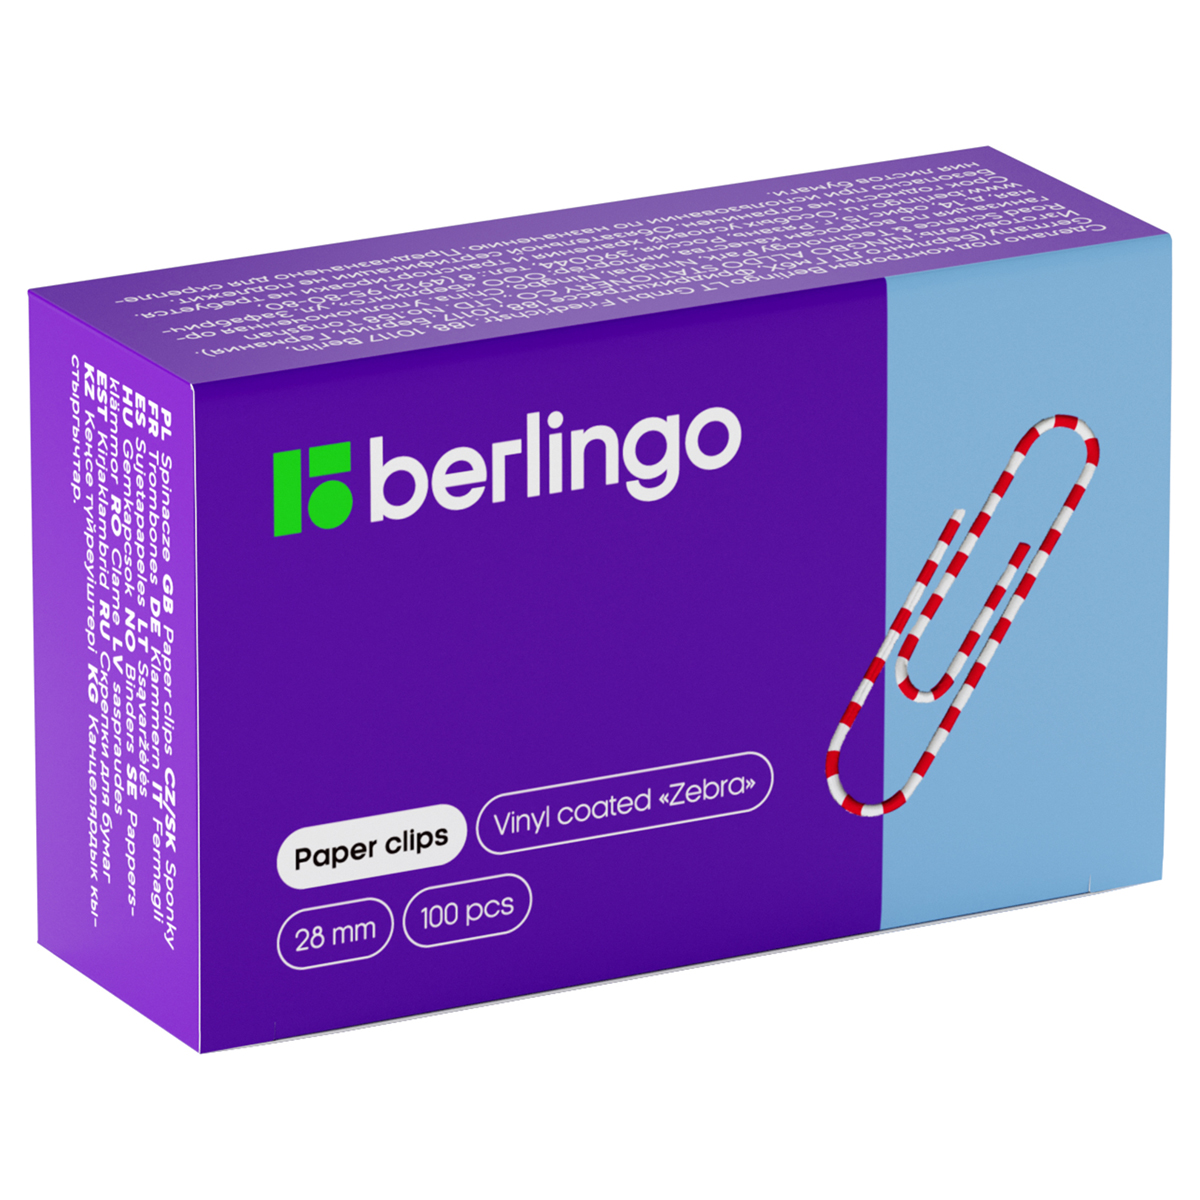 Скрепки 28мм, Berlingo "Зебра", 100шт., цветные, карт. упаковка